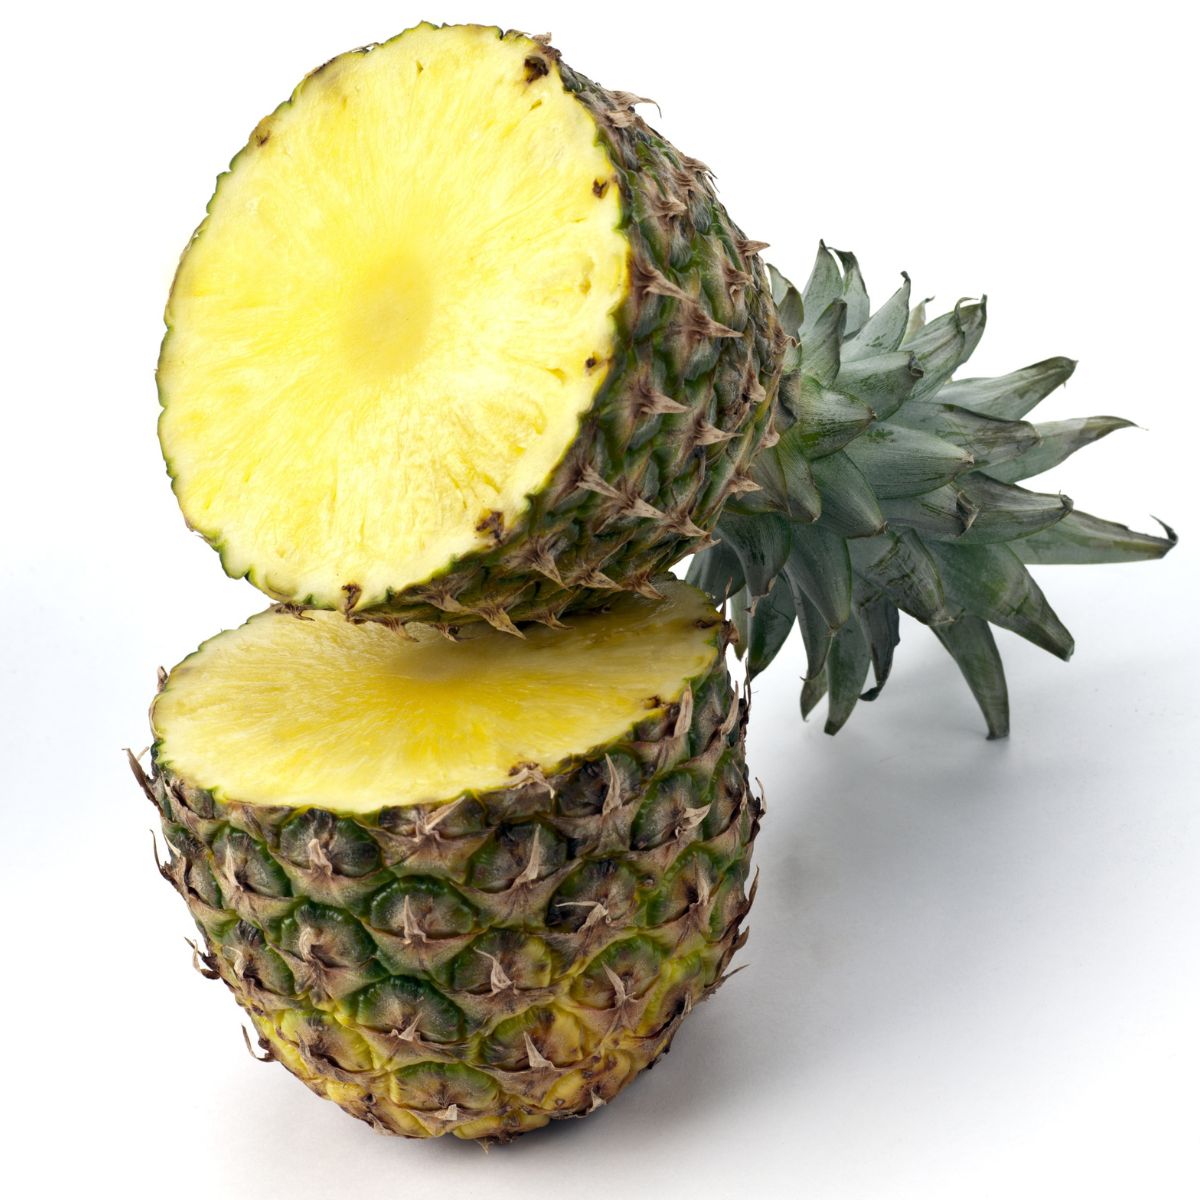 A pineapple cut in half crosswise.